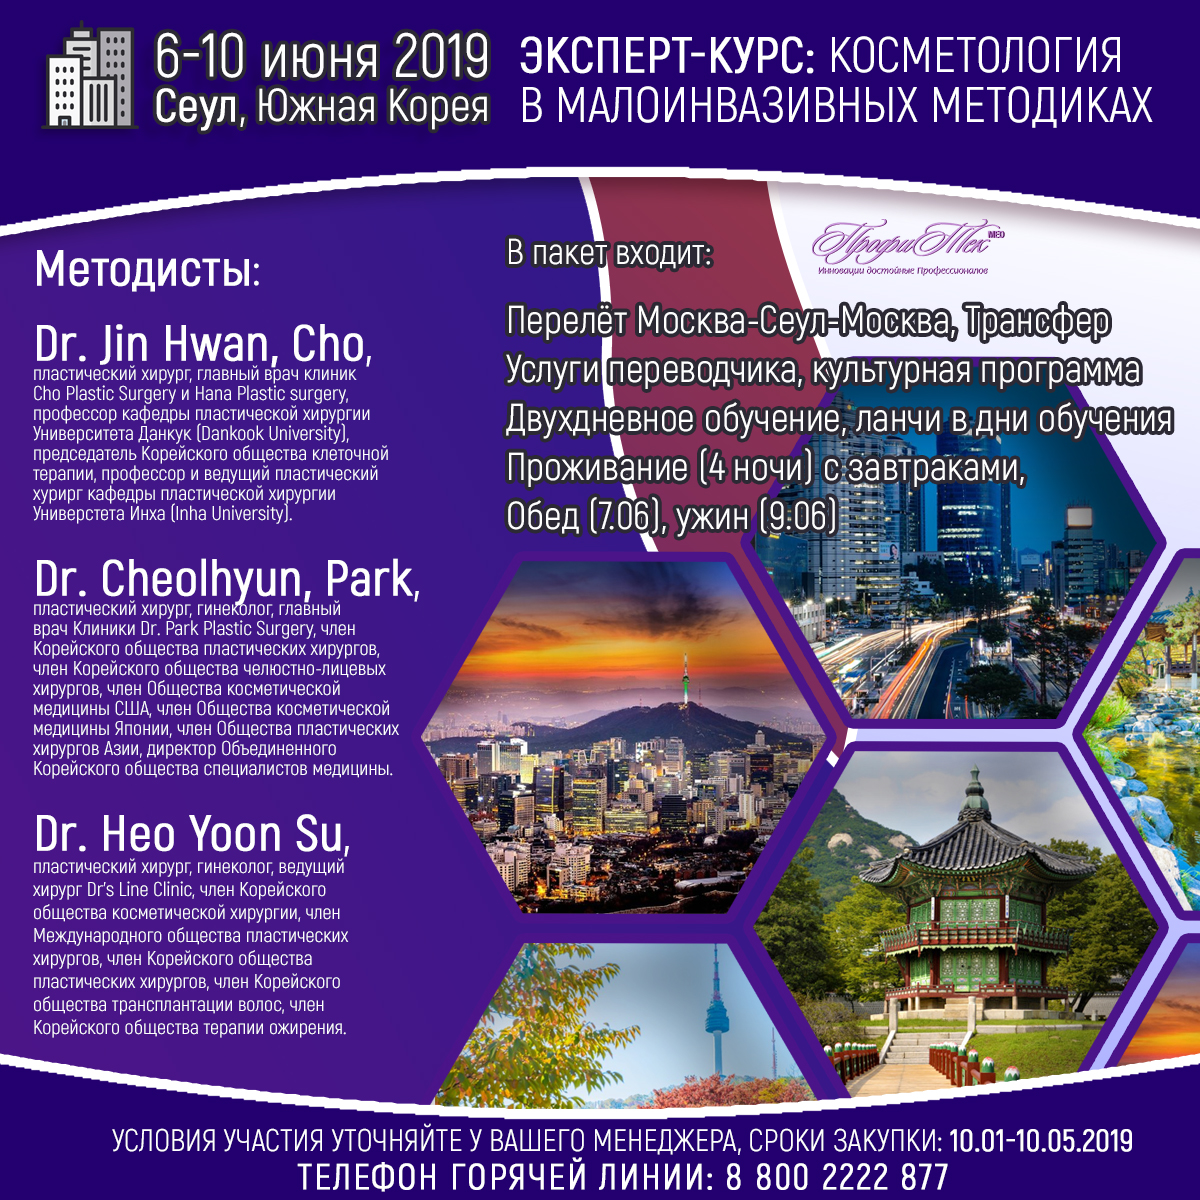 6-10 июня 2019, Сеул, Южня Корея, Эксперт-курс малоинвазивные методики